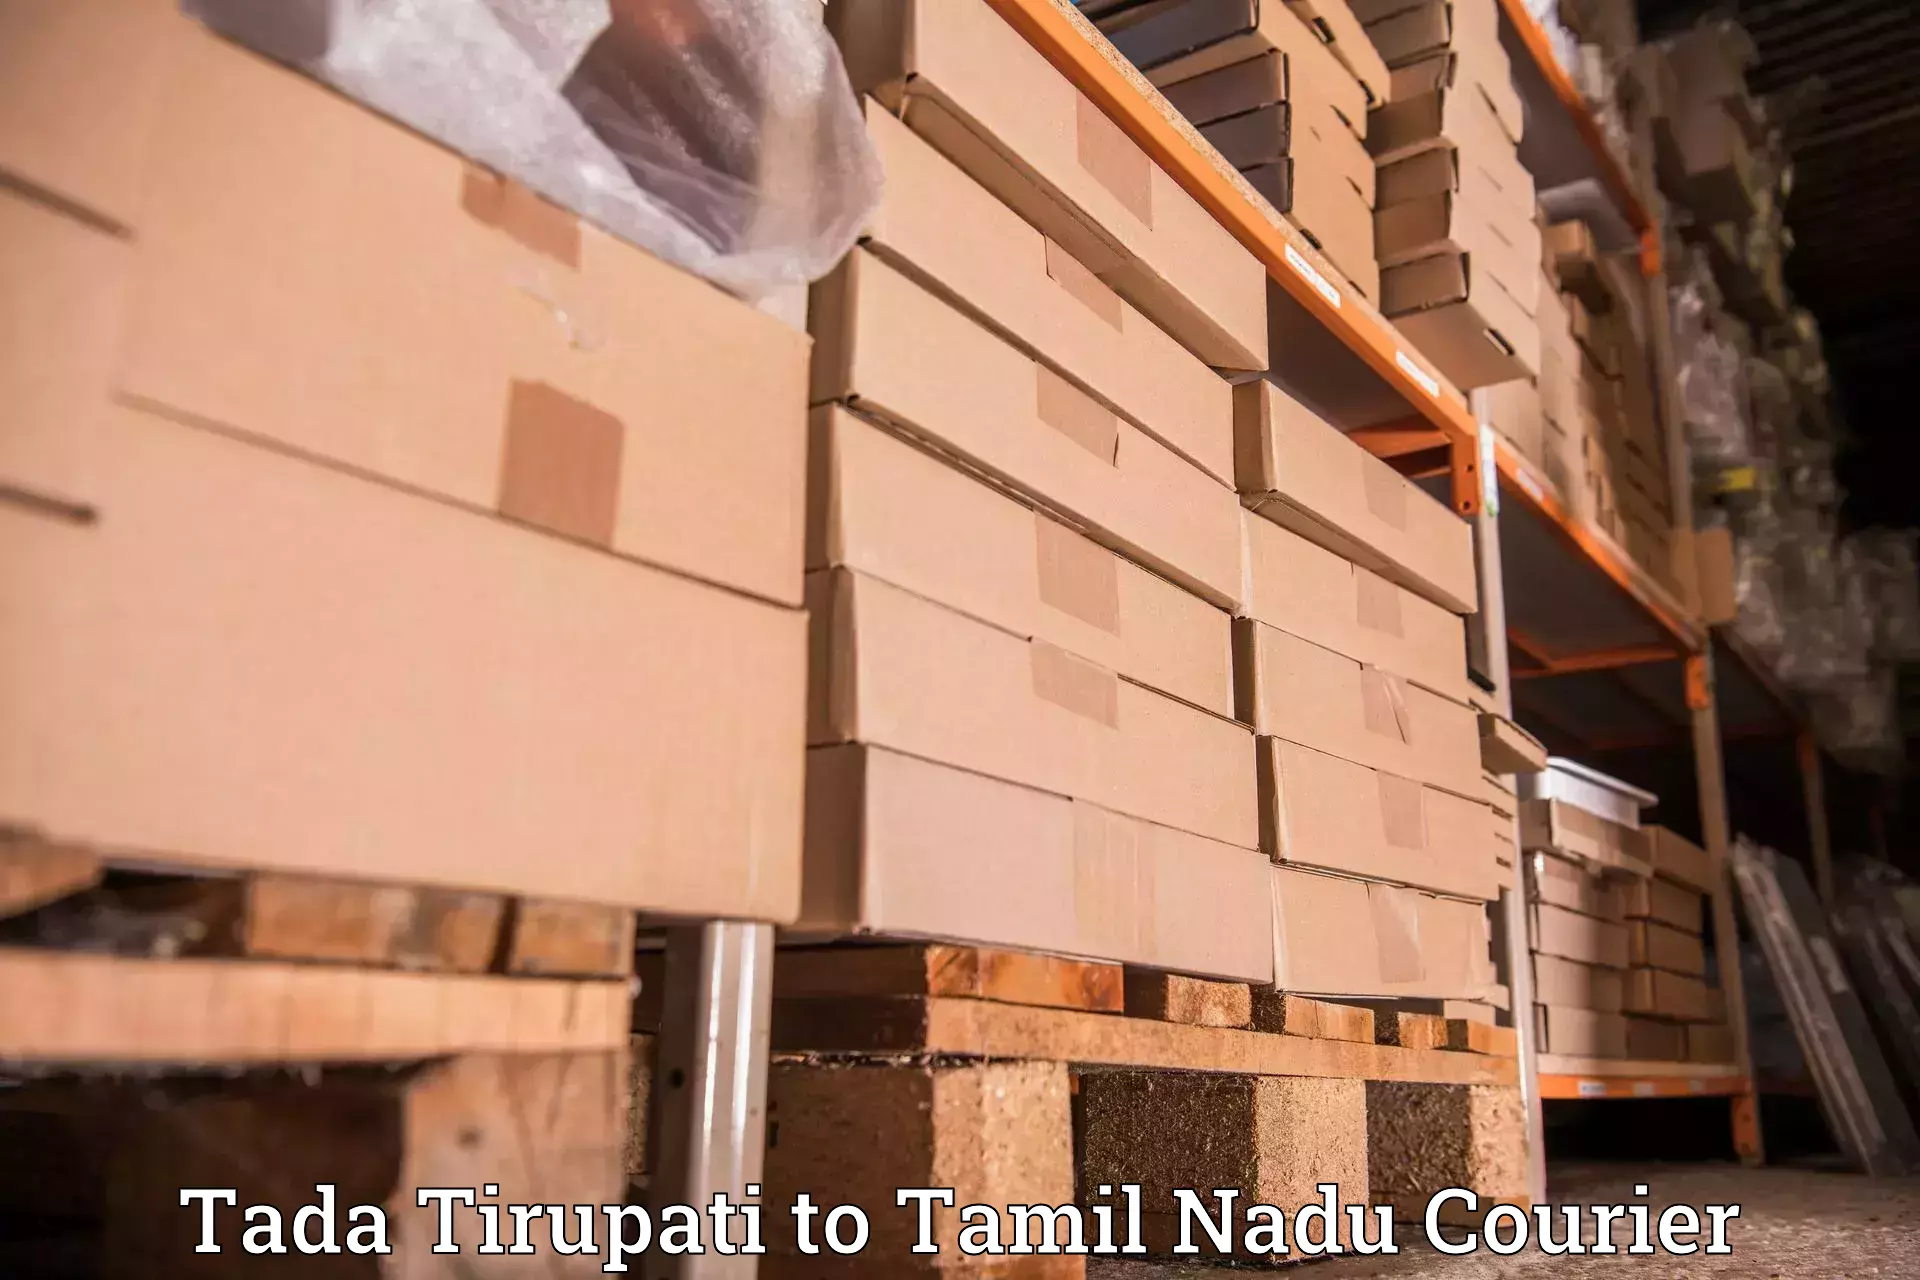 High-efficiency logistics Tada Tirupati to Tamil Nadu